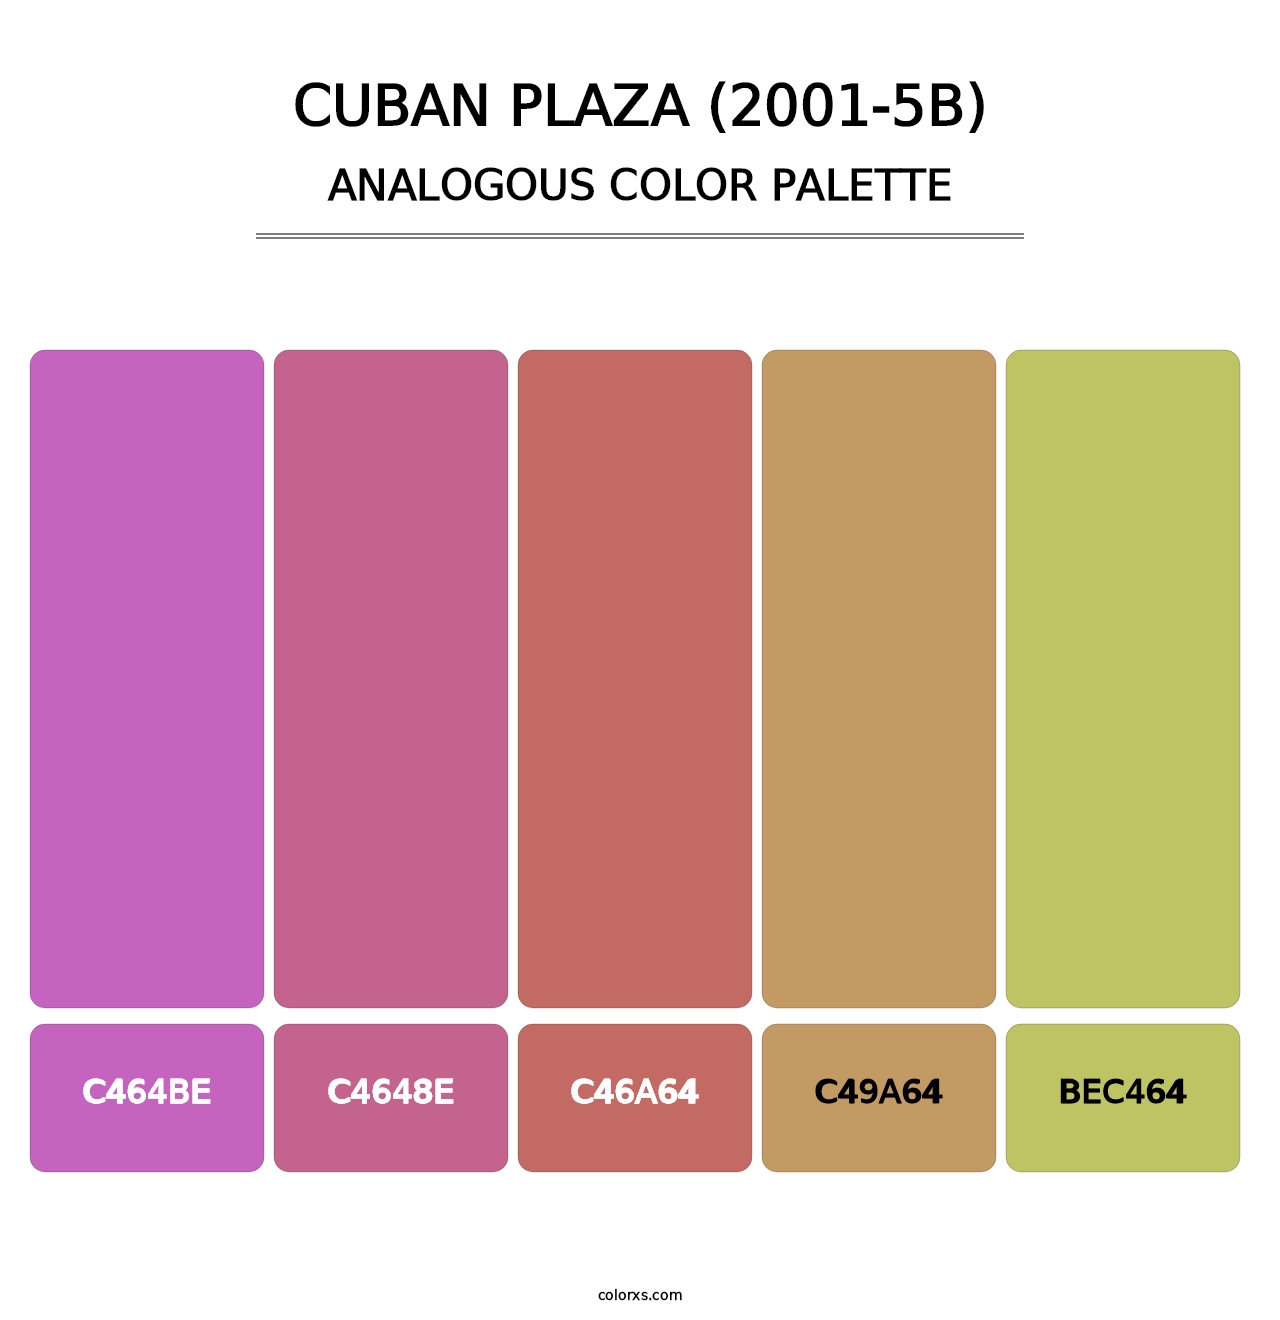 Cuban Plaza (2001-5B) - Analogous Color Palette